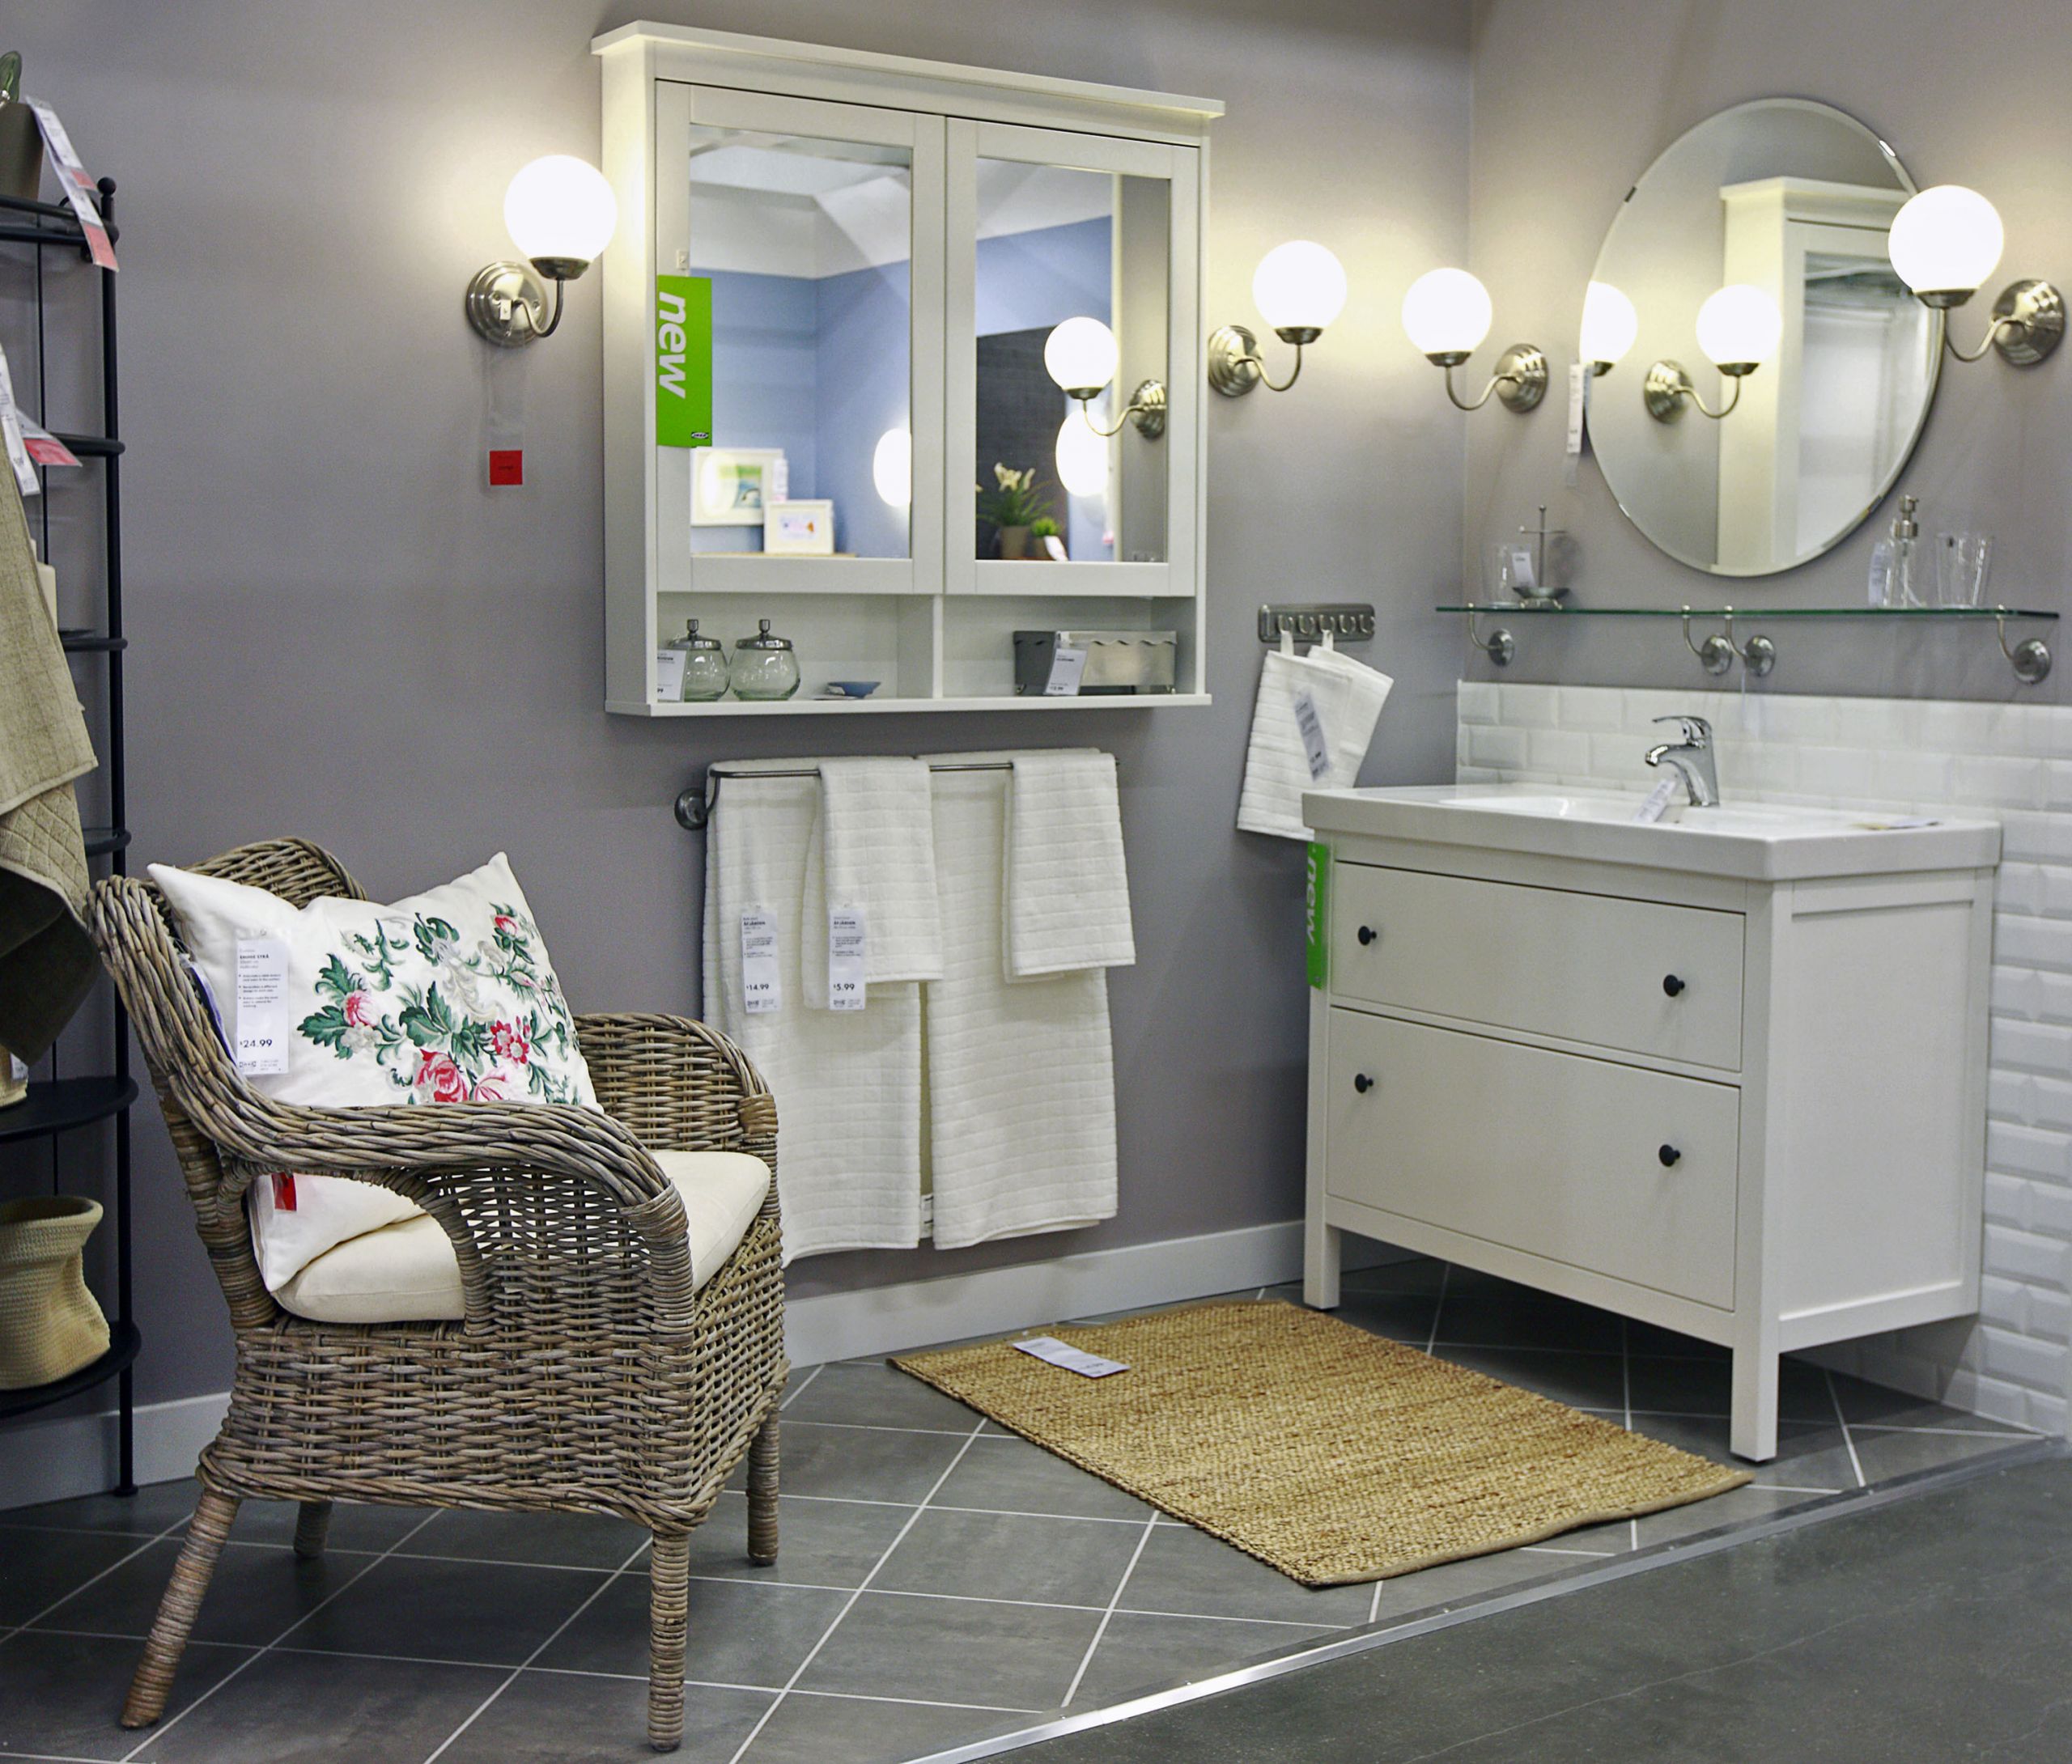 Hemnes Bathroom Vanity
 Bathroom vanity Hemnes by Ikea Design